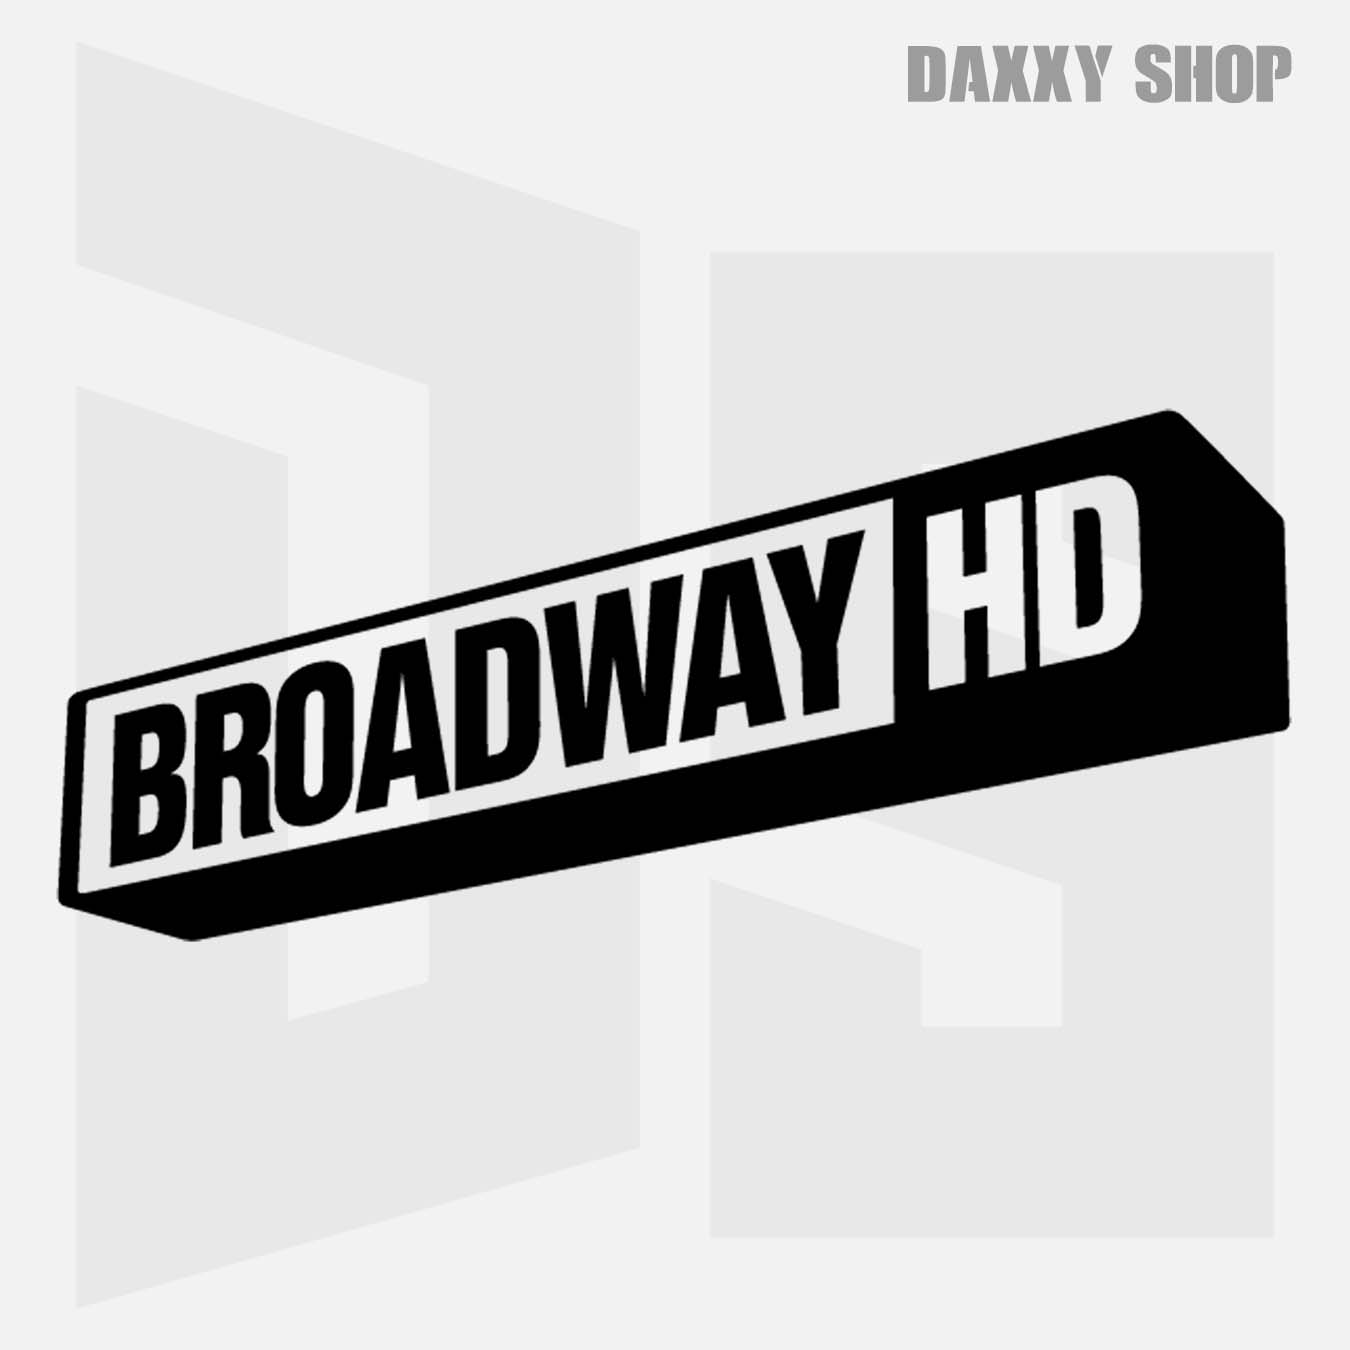 BroadwayHD - daxxyshop.com